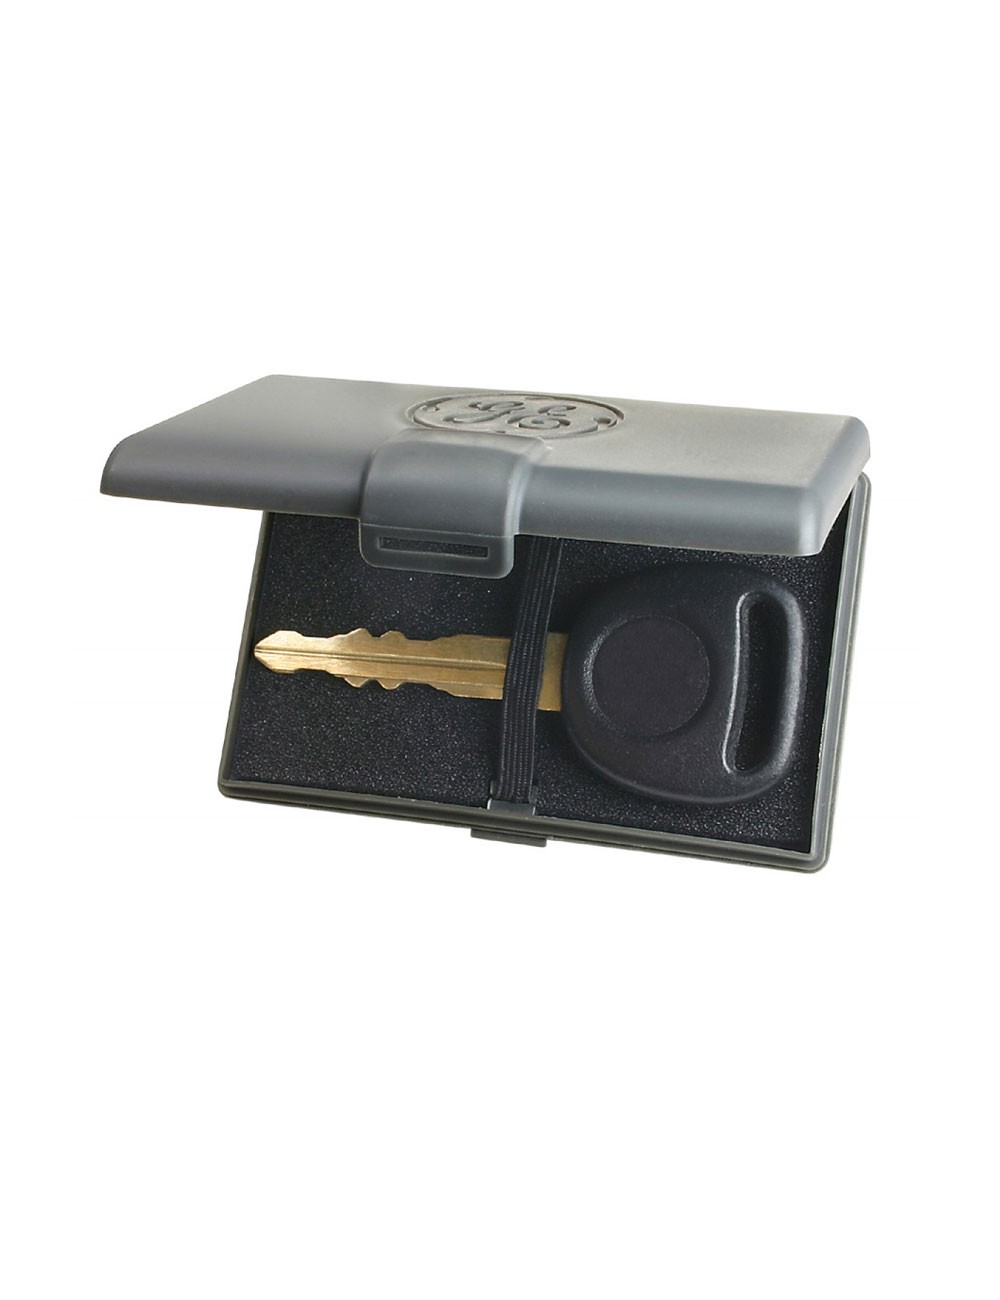 noir Support de clé sous la voiture AMENA Porte-clés magnétique cachera une clé pour votre voiture Cachette de clé d'extérieur 